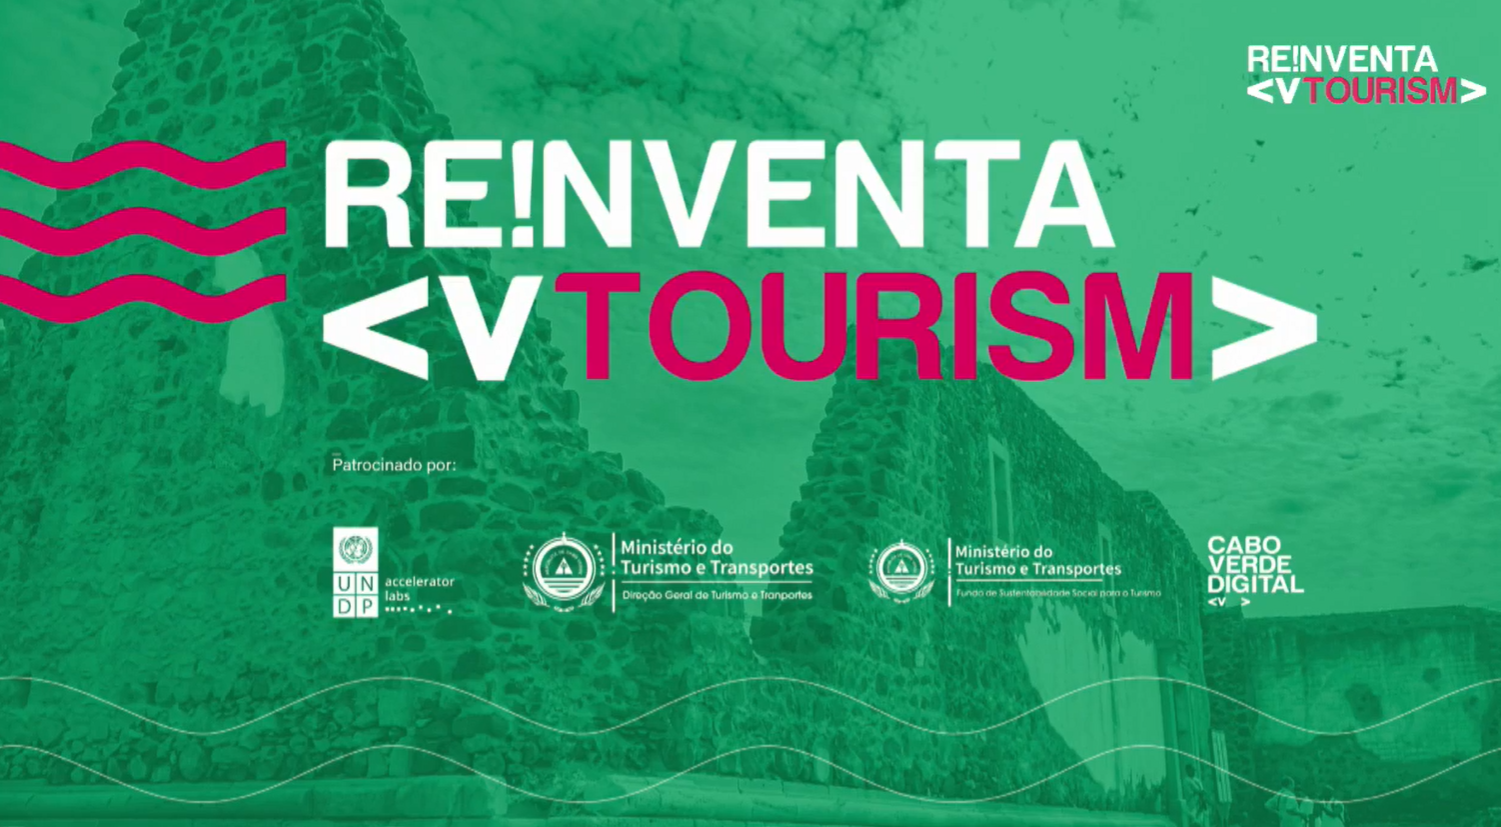 Governo lança programa tecnológico “Re!nventa” para encontrar soluções digitais na área do turismo